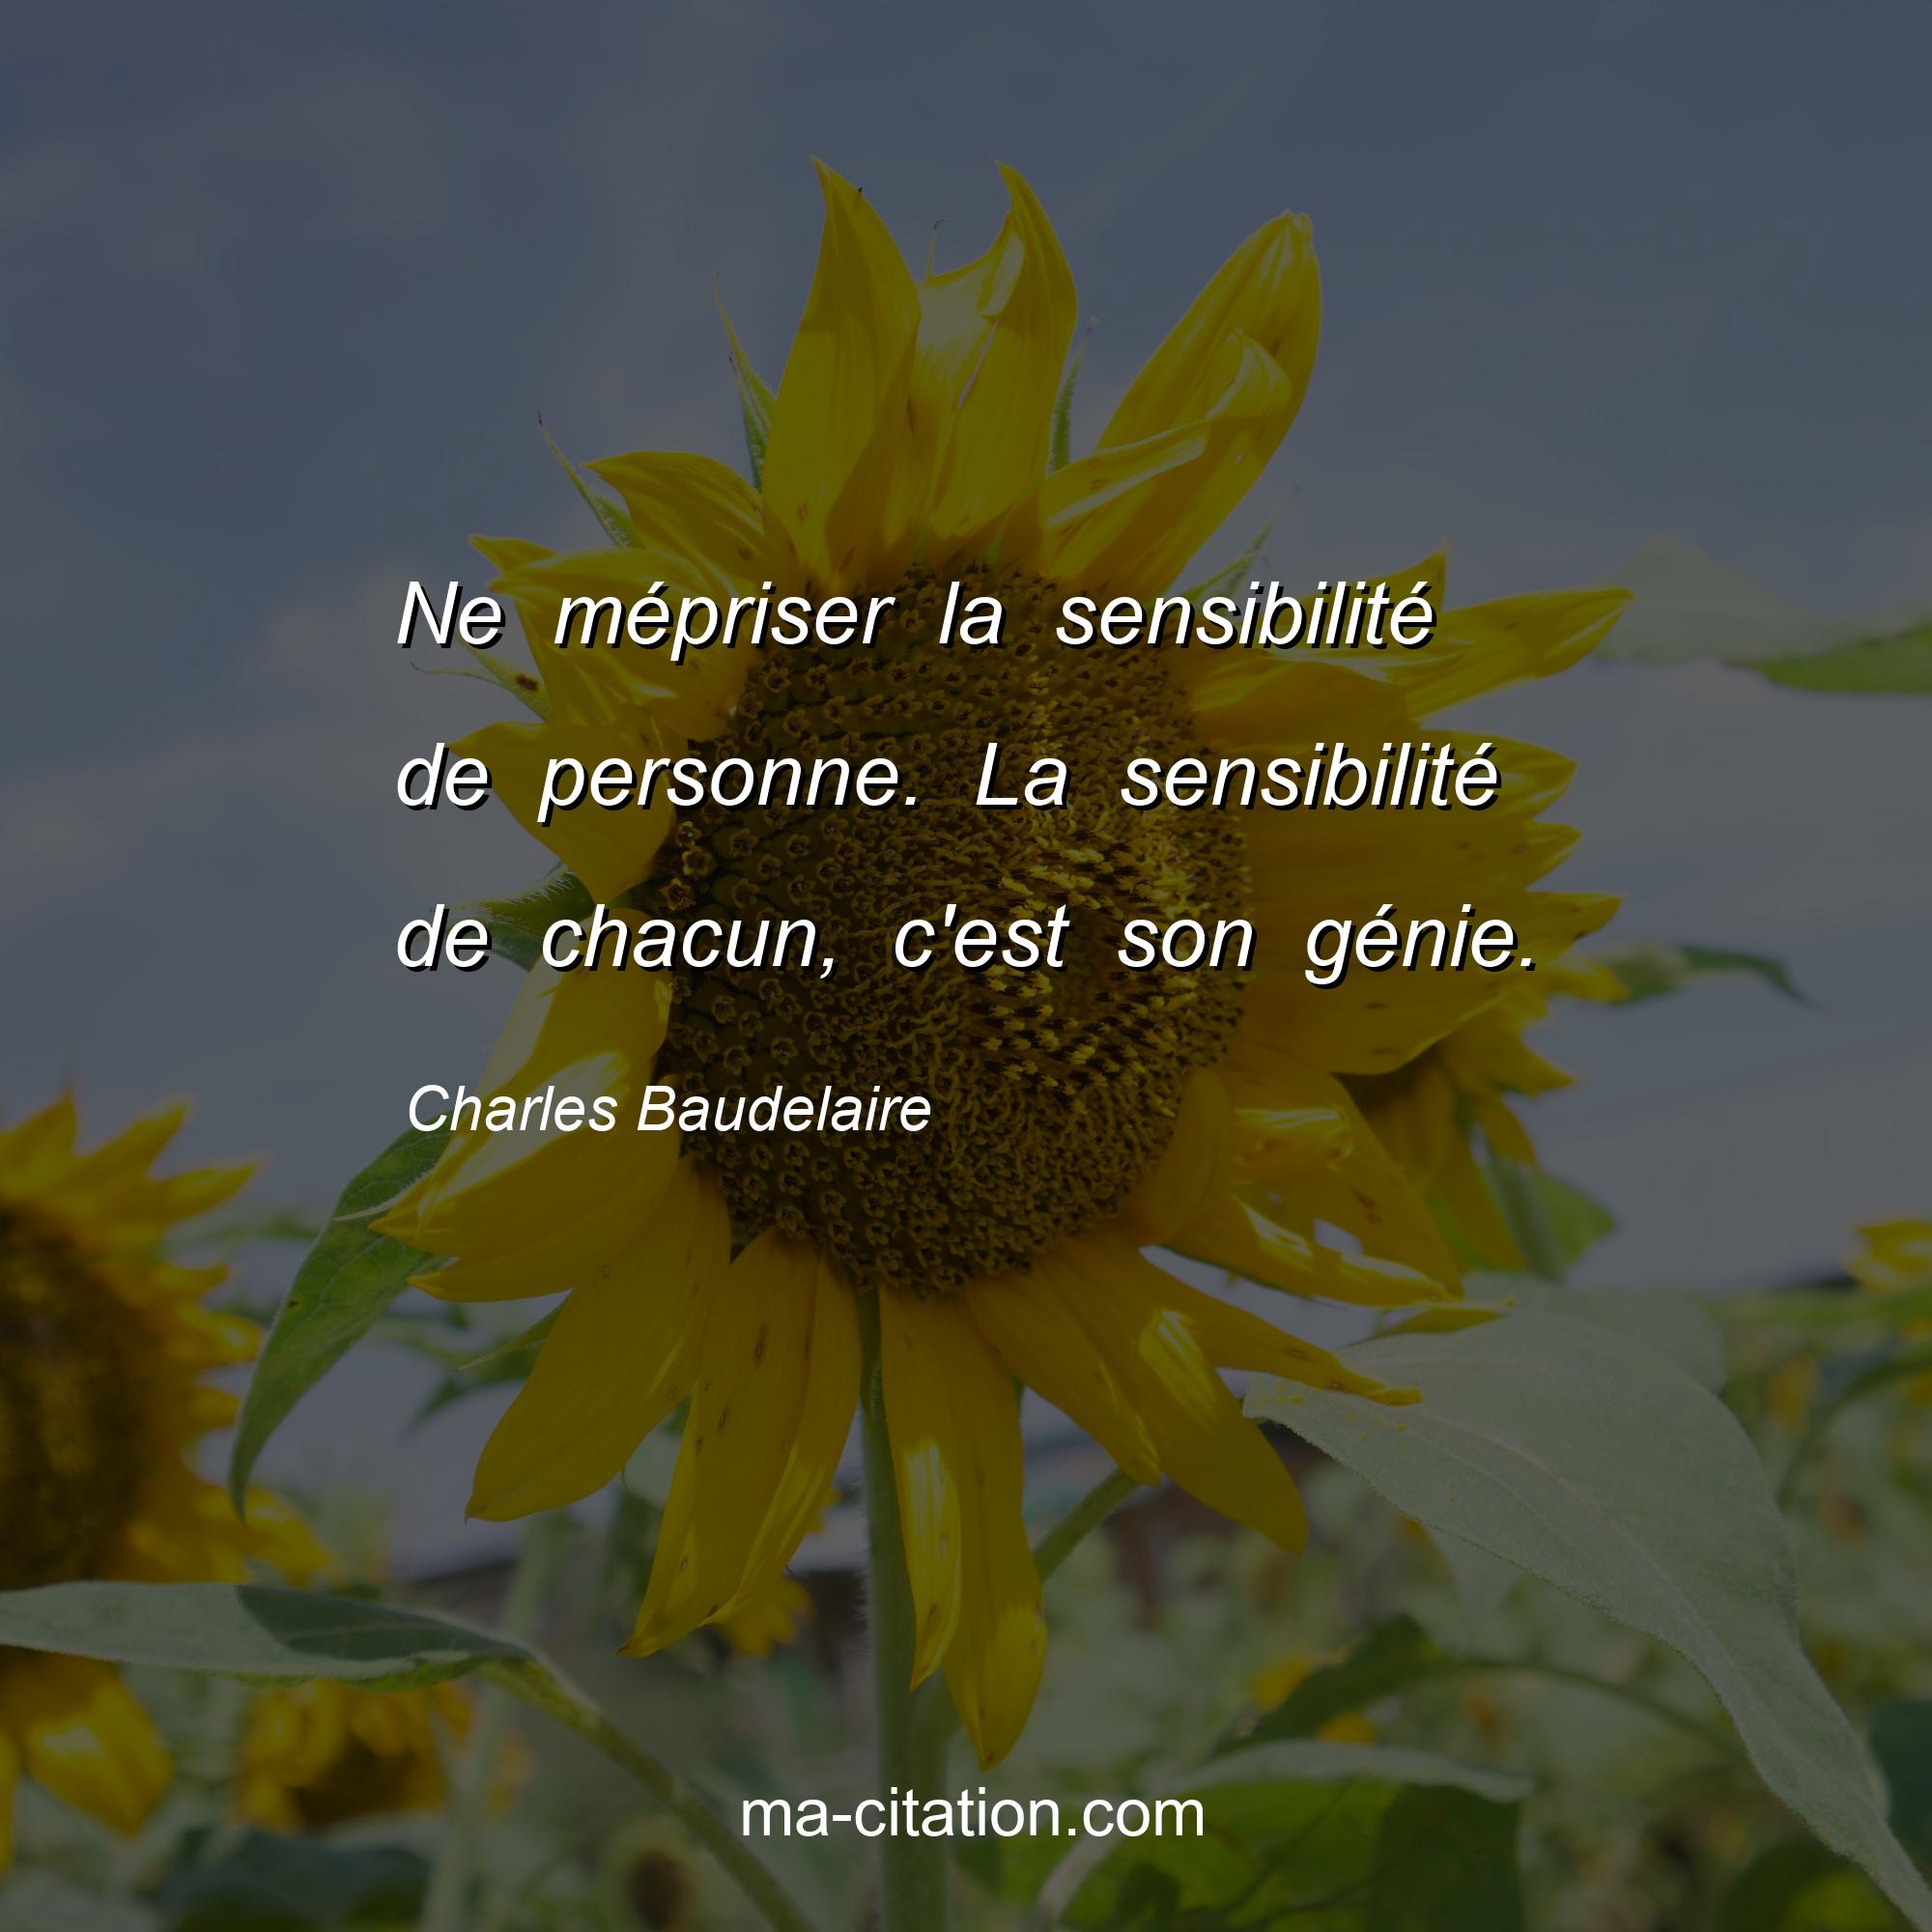 Charles Baudelaire : Ne mépriser la sensibilité de personne. La sensibilité de chacun, c'est son génie.